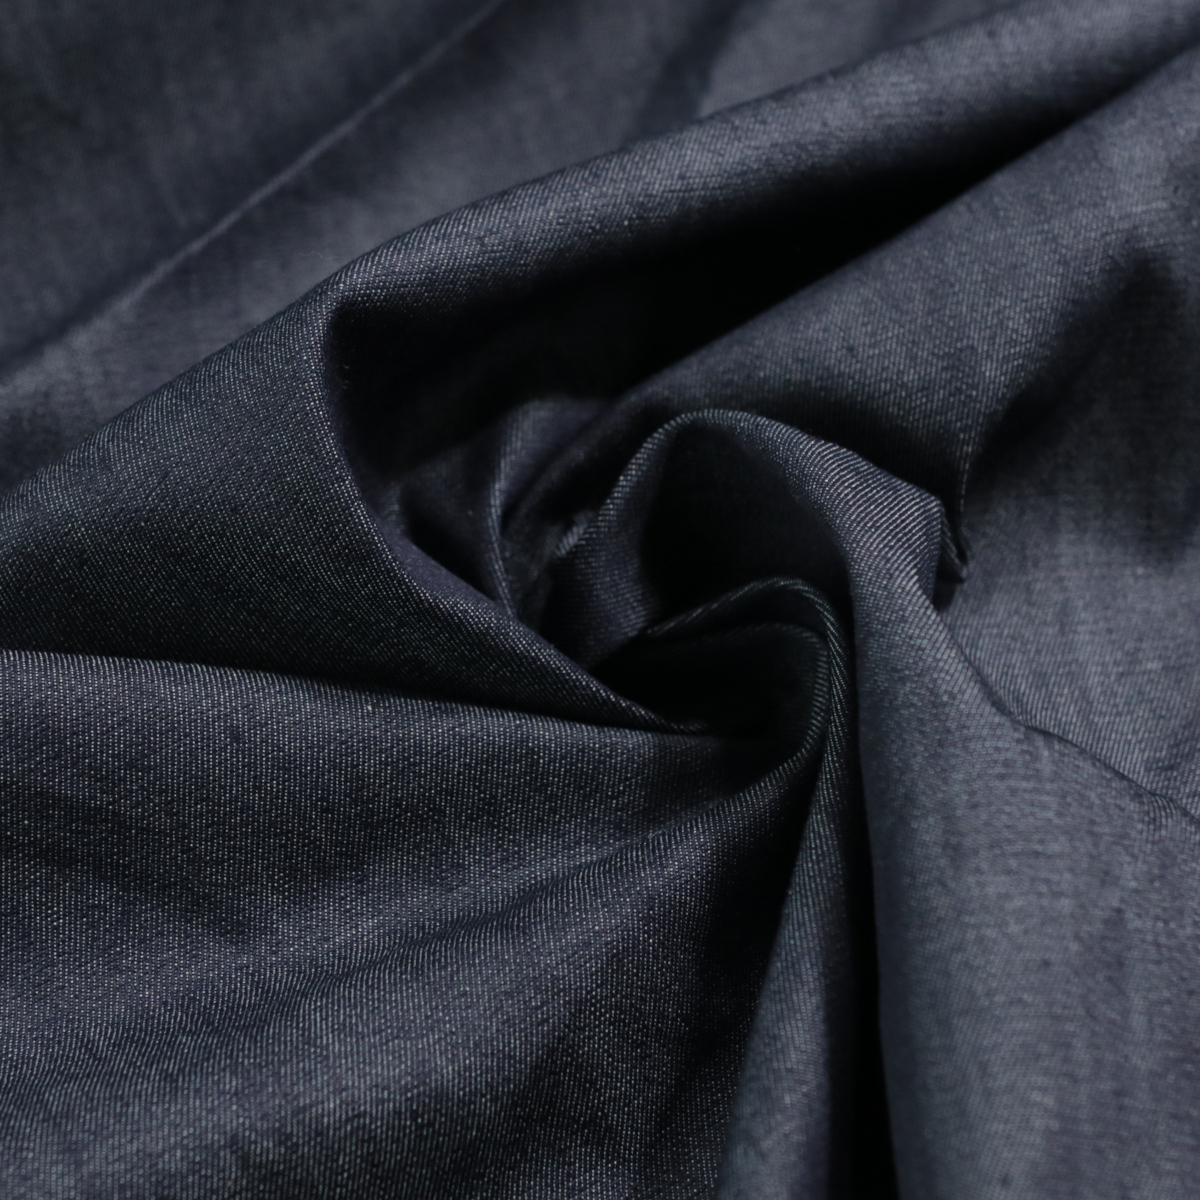 Sommer Jeansstoff mit Stretch für Jacke Hose Rock Kleid Baumwollstoff Meterware - Denim Blau